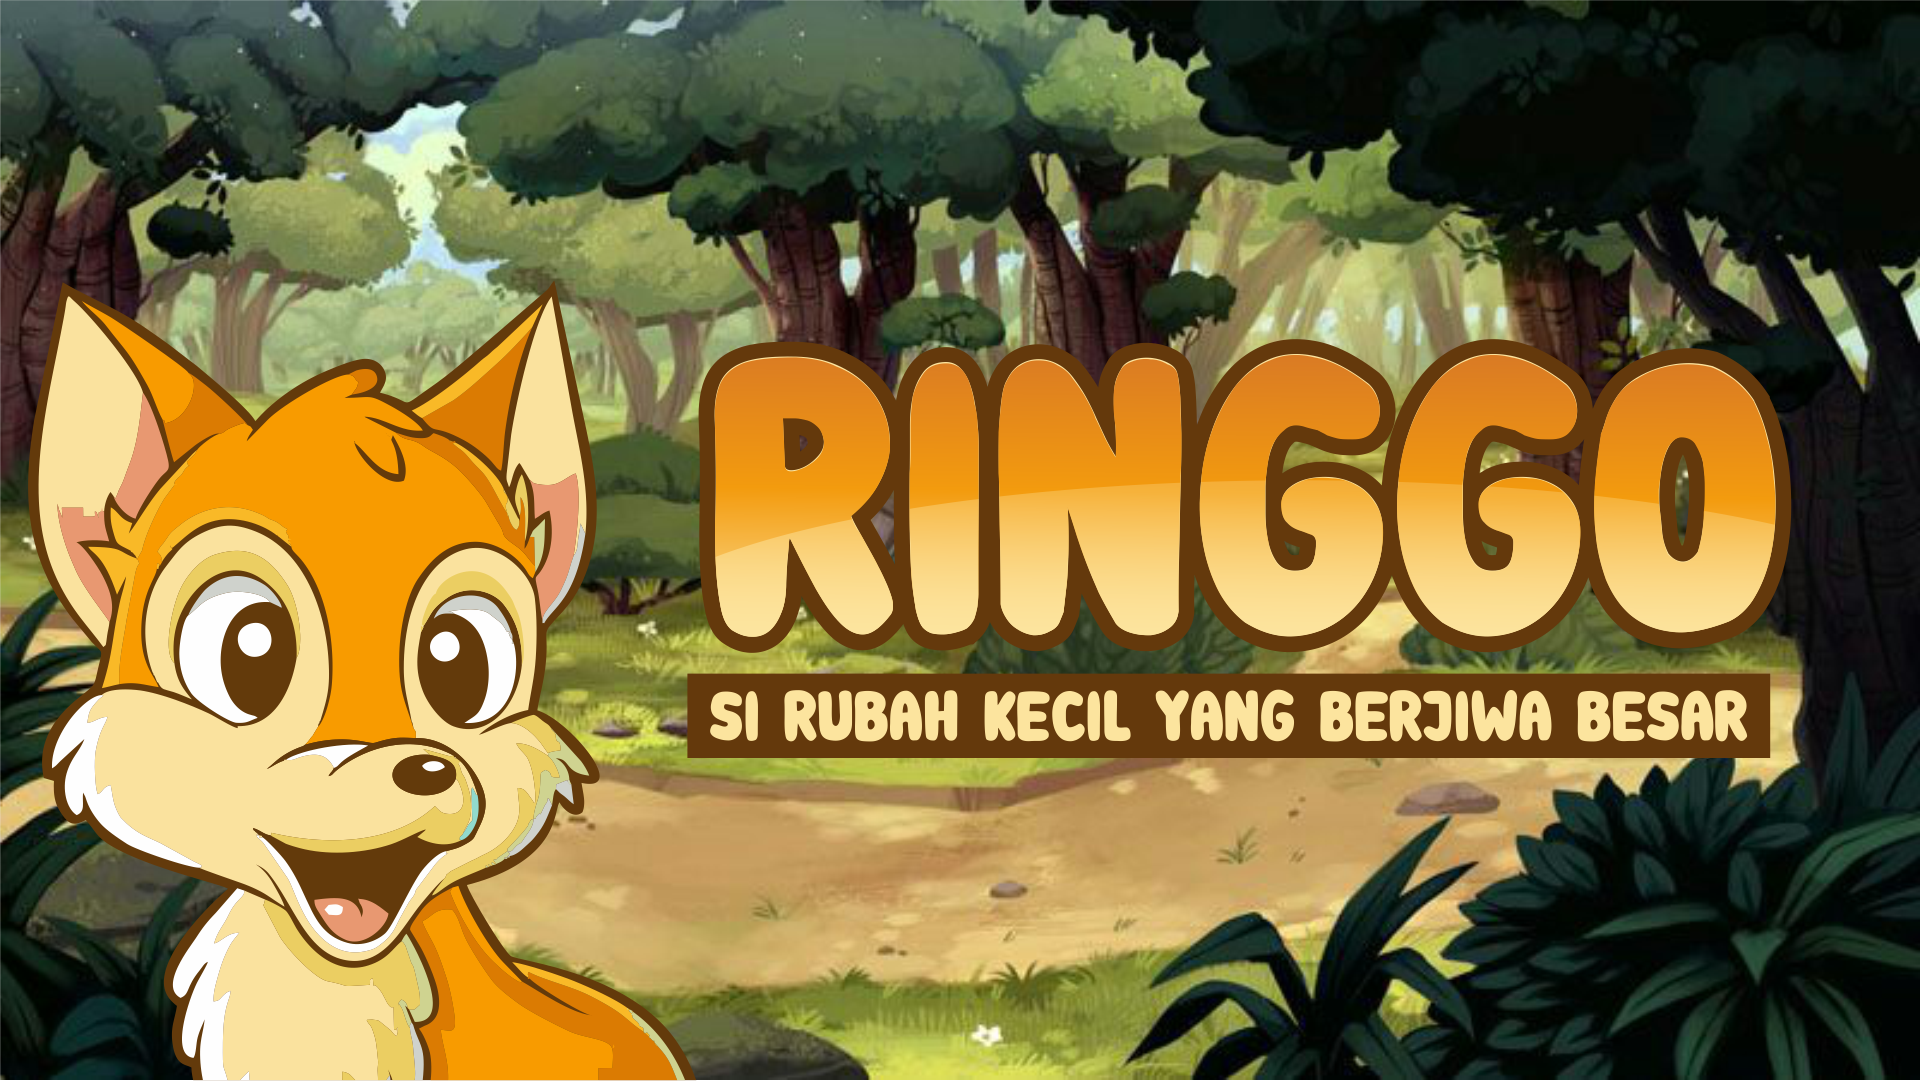 RINGGO SI RUBAH KECIL | Dongeng Anak Bahasa Indonesia | Cerita Rakyat dan Dongeng Nusantara